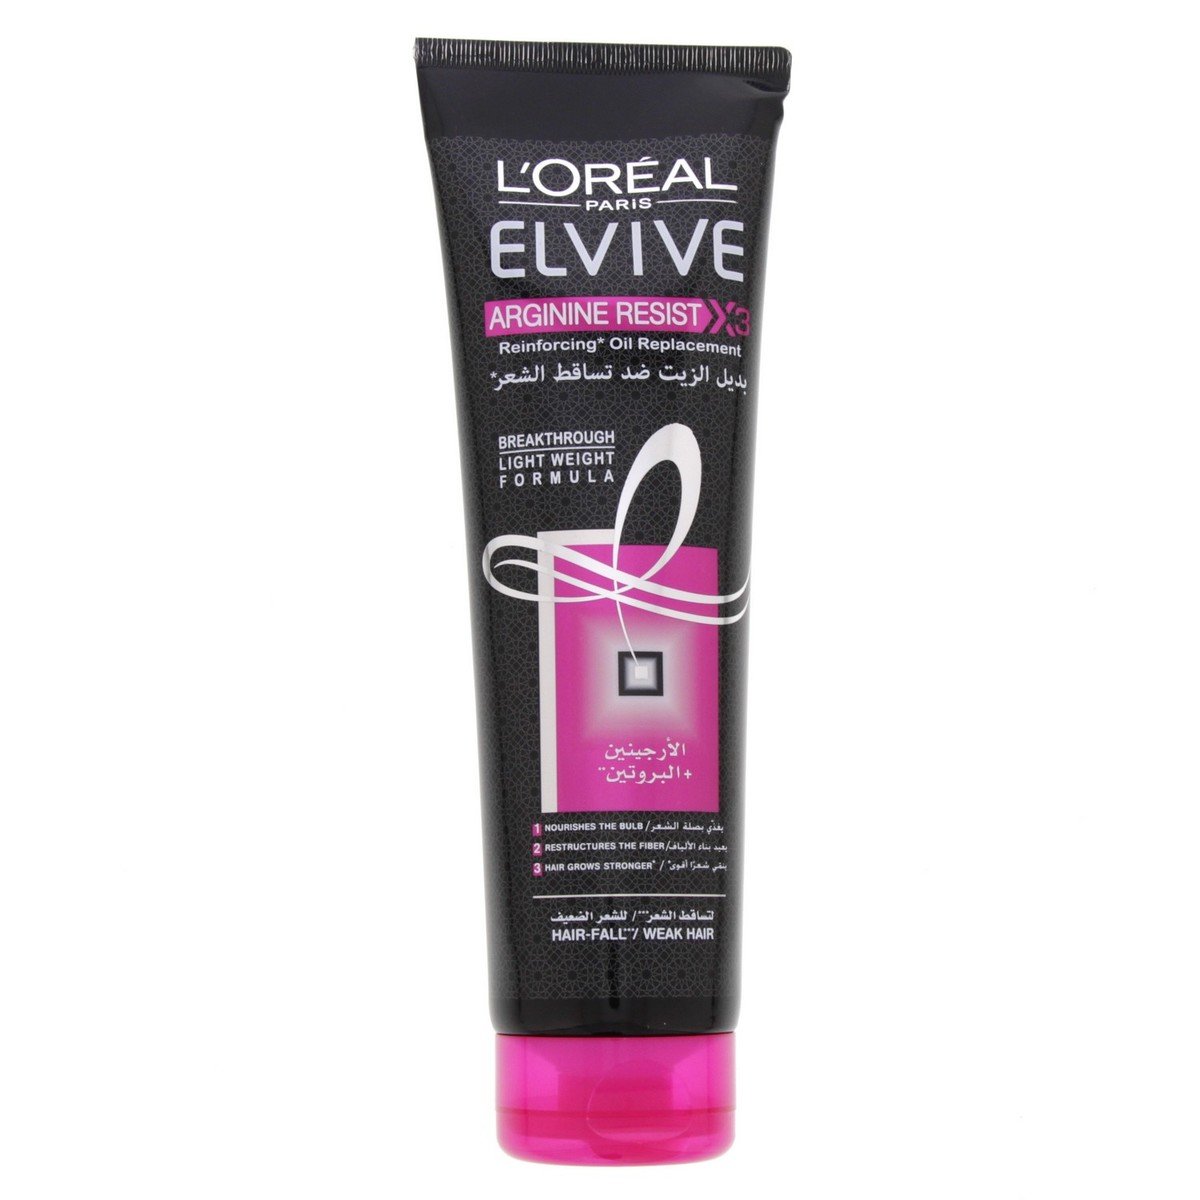 L'Oreal Elvive Arginine Resist Oil Replacement Hair Fall 300 ml